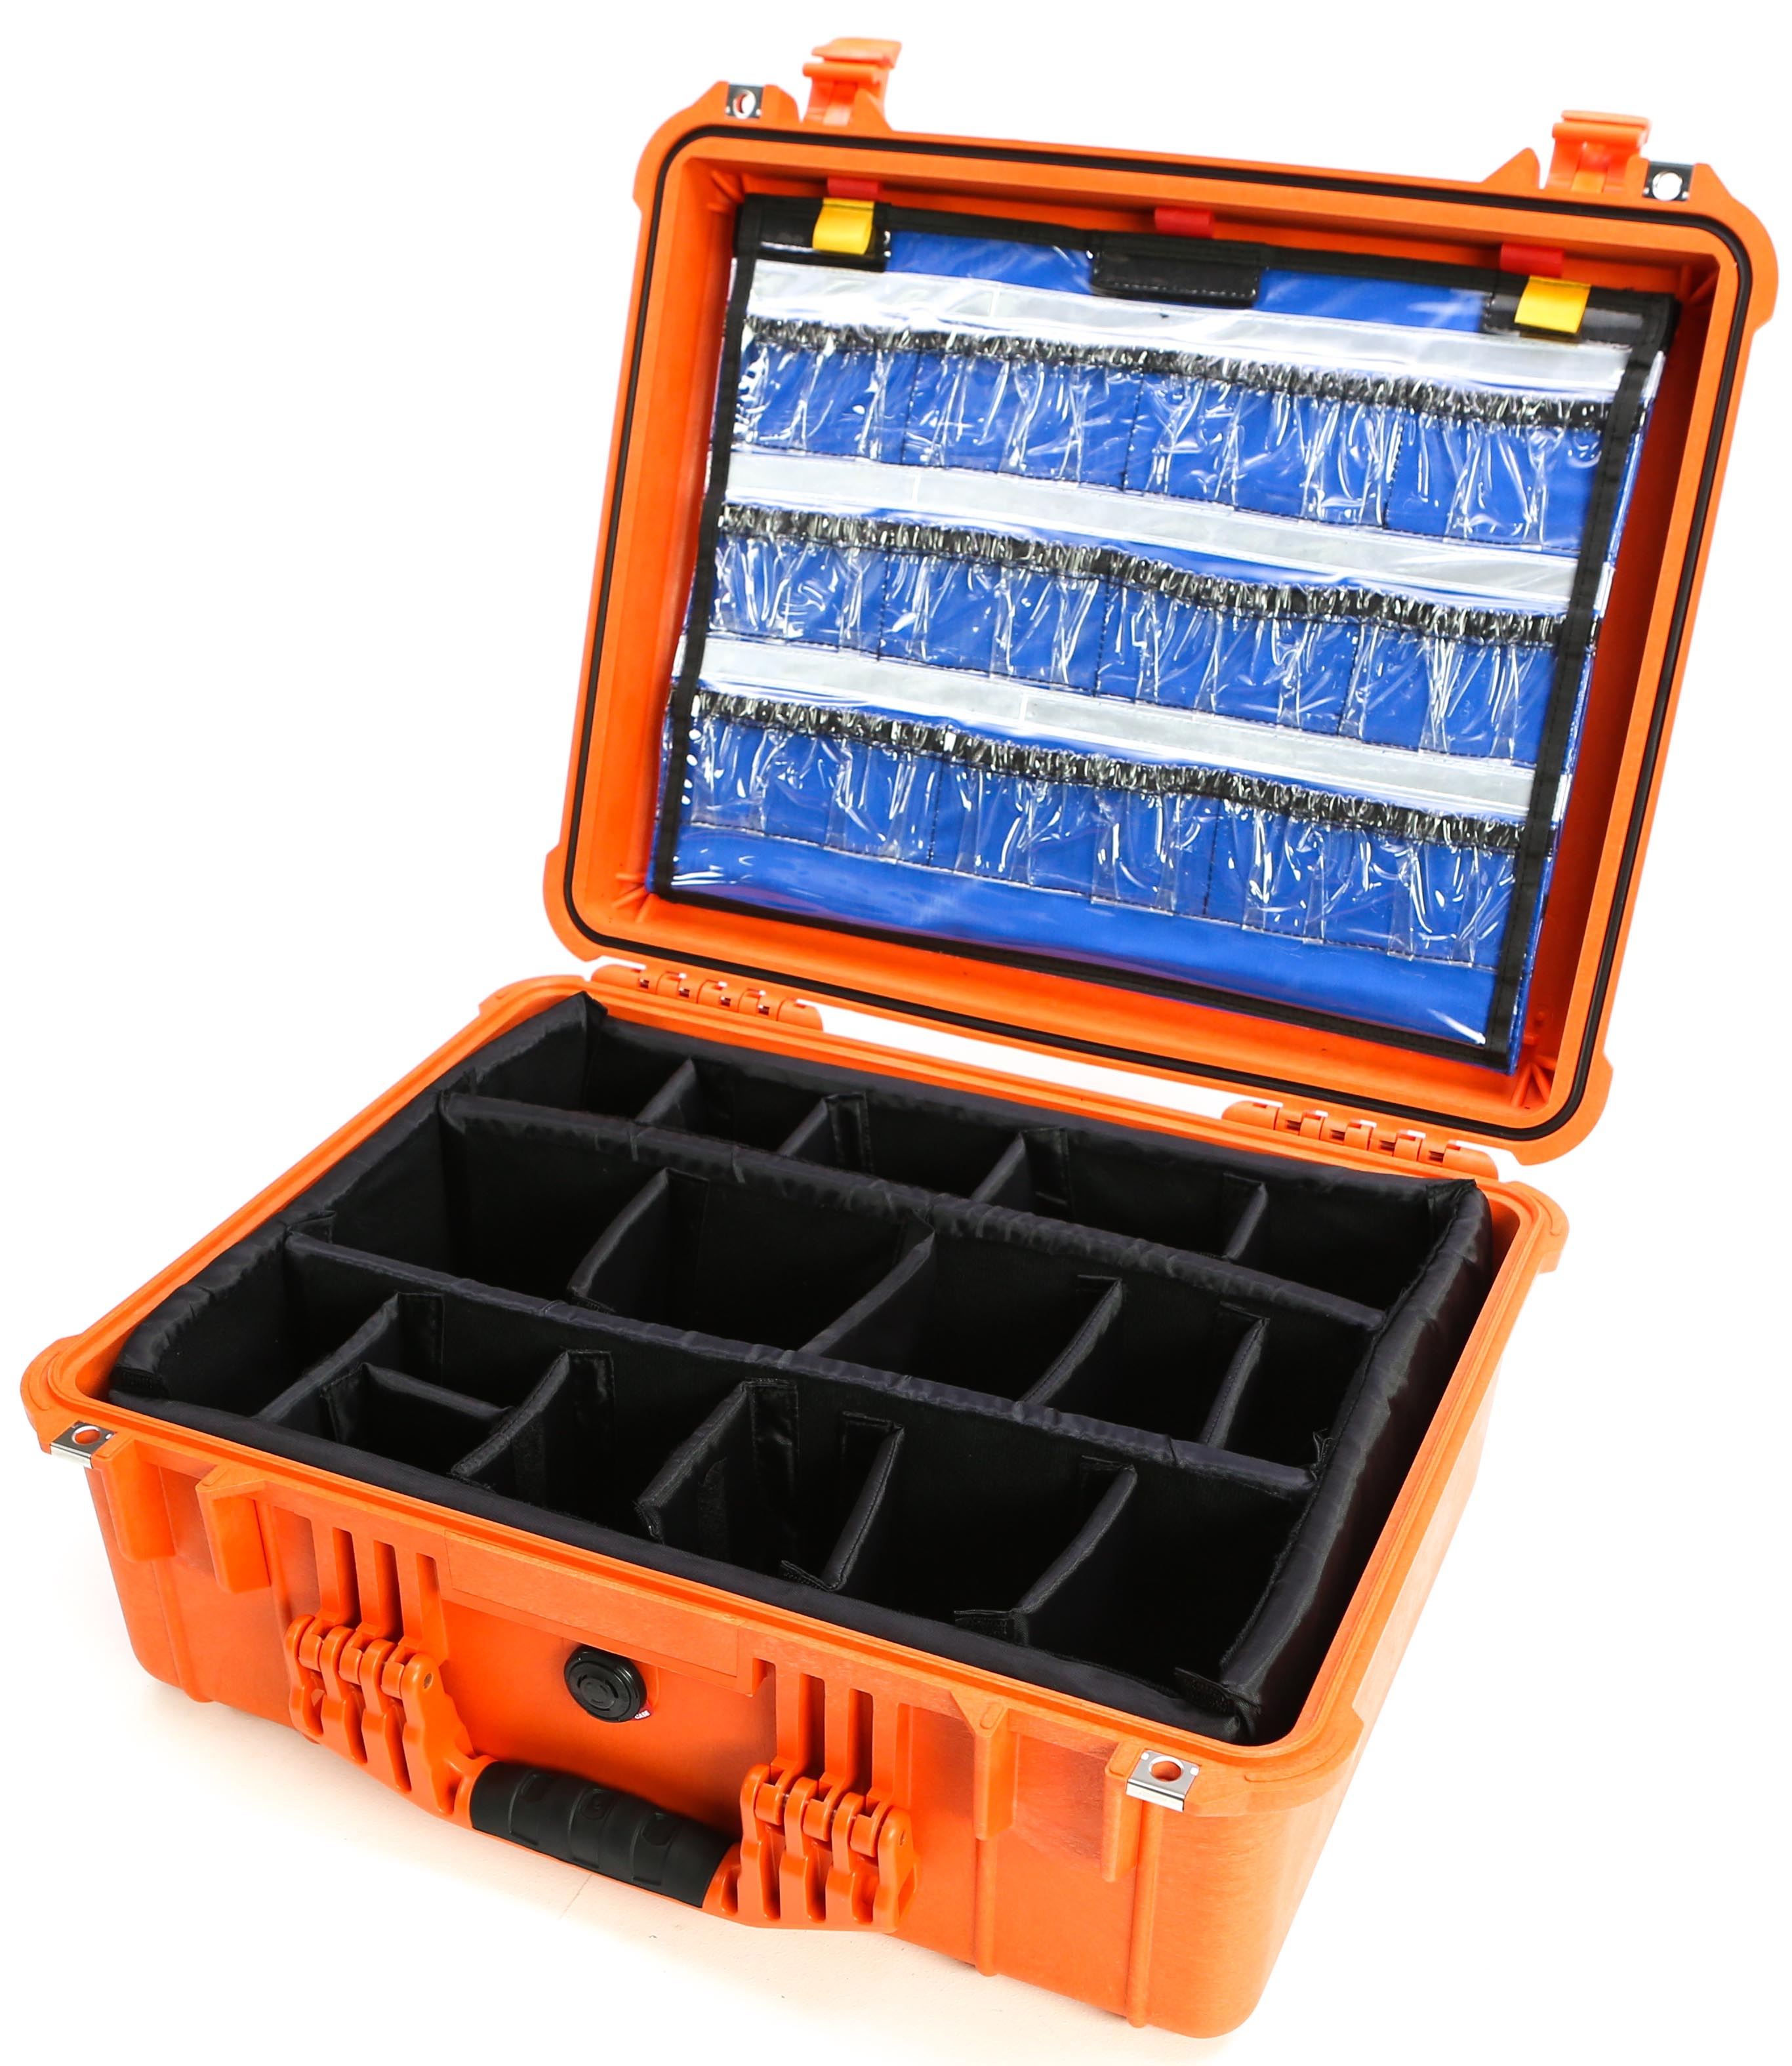 Pelican 1550 EMS Case (Orange)